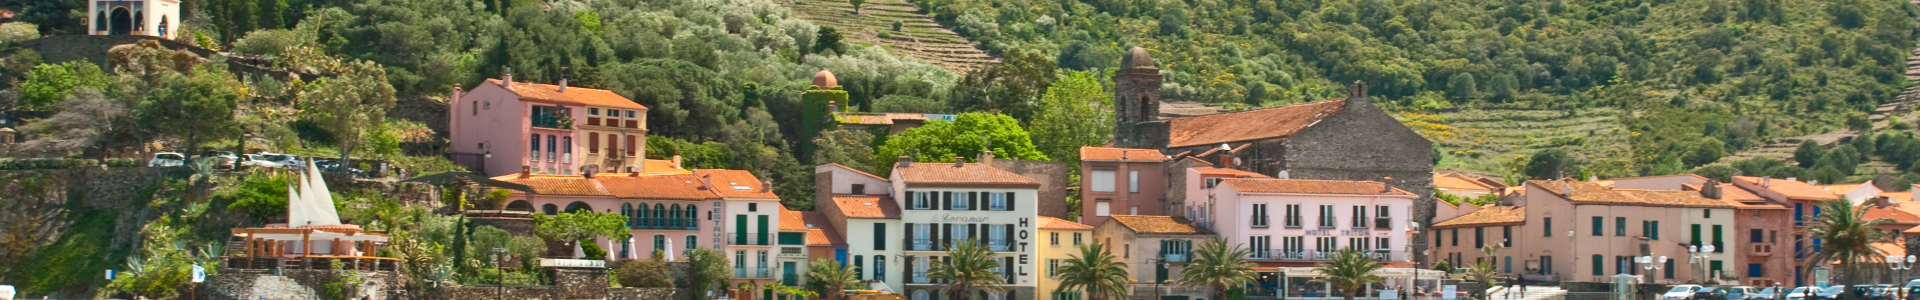 Verychic : vente flash week-ends en Languedoc-Roussillon, hôtels 4*, jusqu'à - 65 %